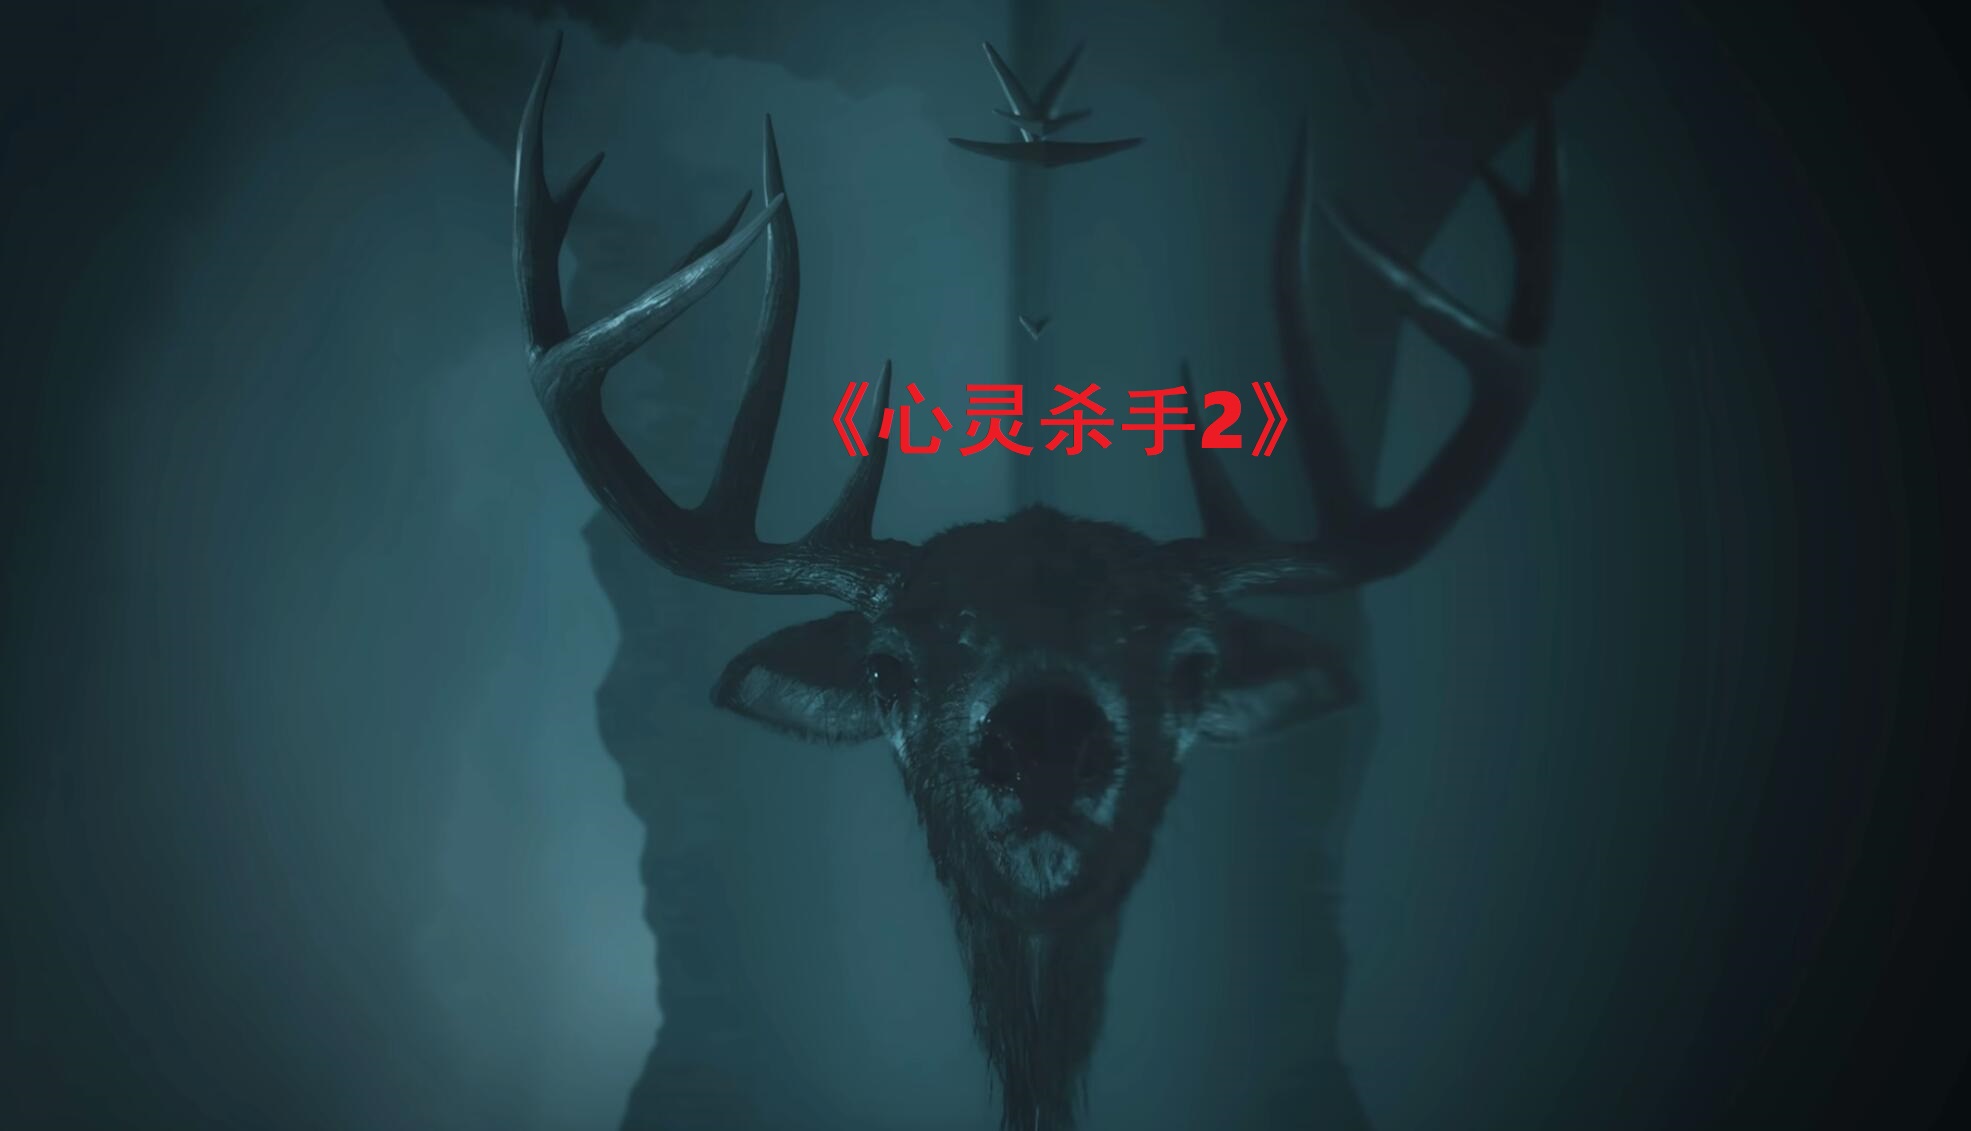 心灵杀手2 Alan Wake 2 v1.06 中文网盘下载-二次元共享站2cyshare